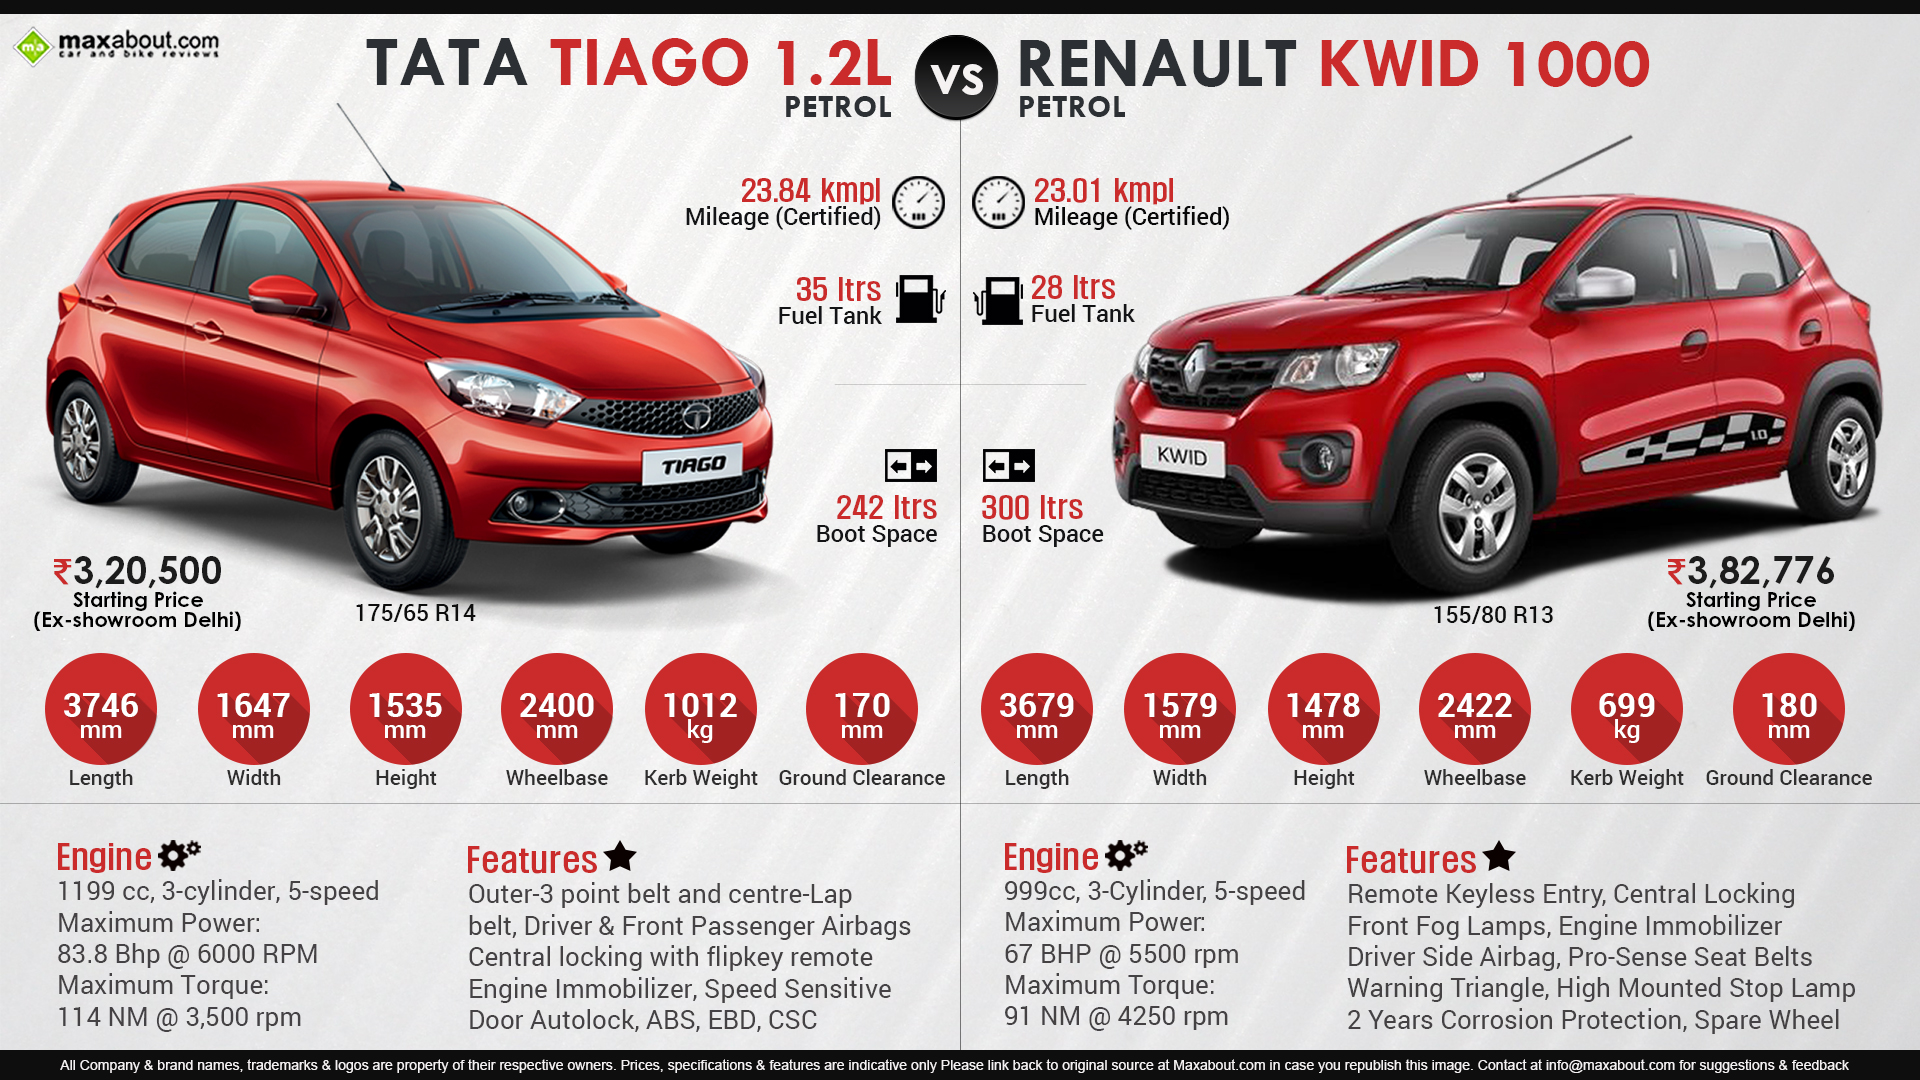 Tata Tiago Vs Renault KWID 1000